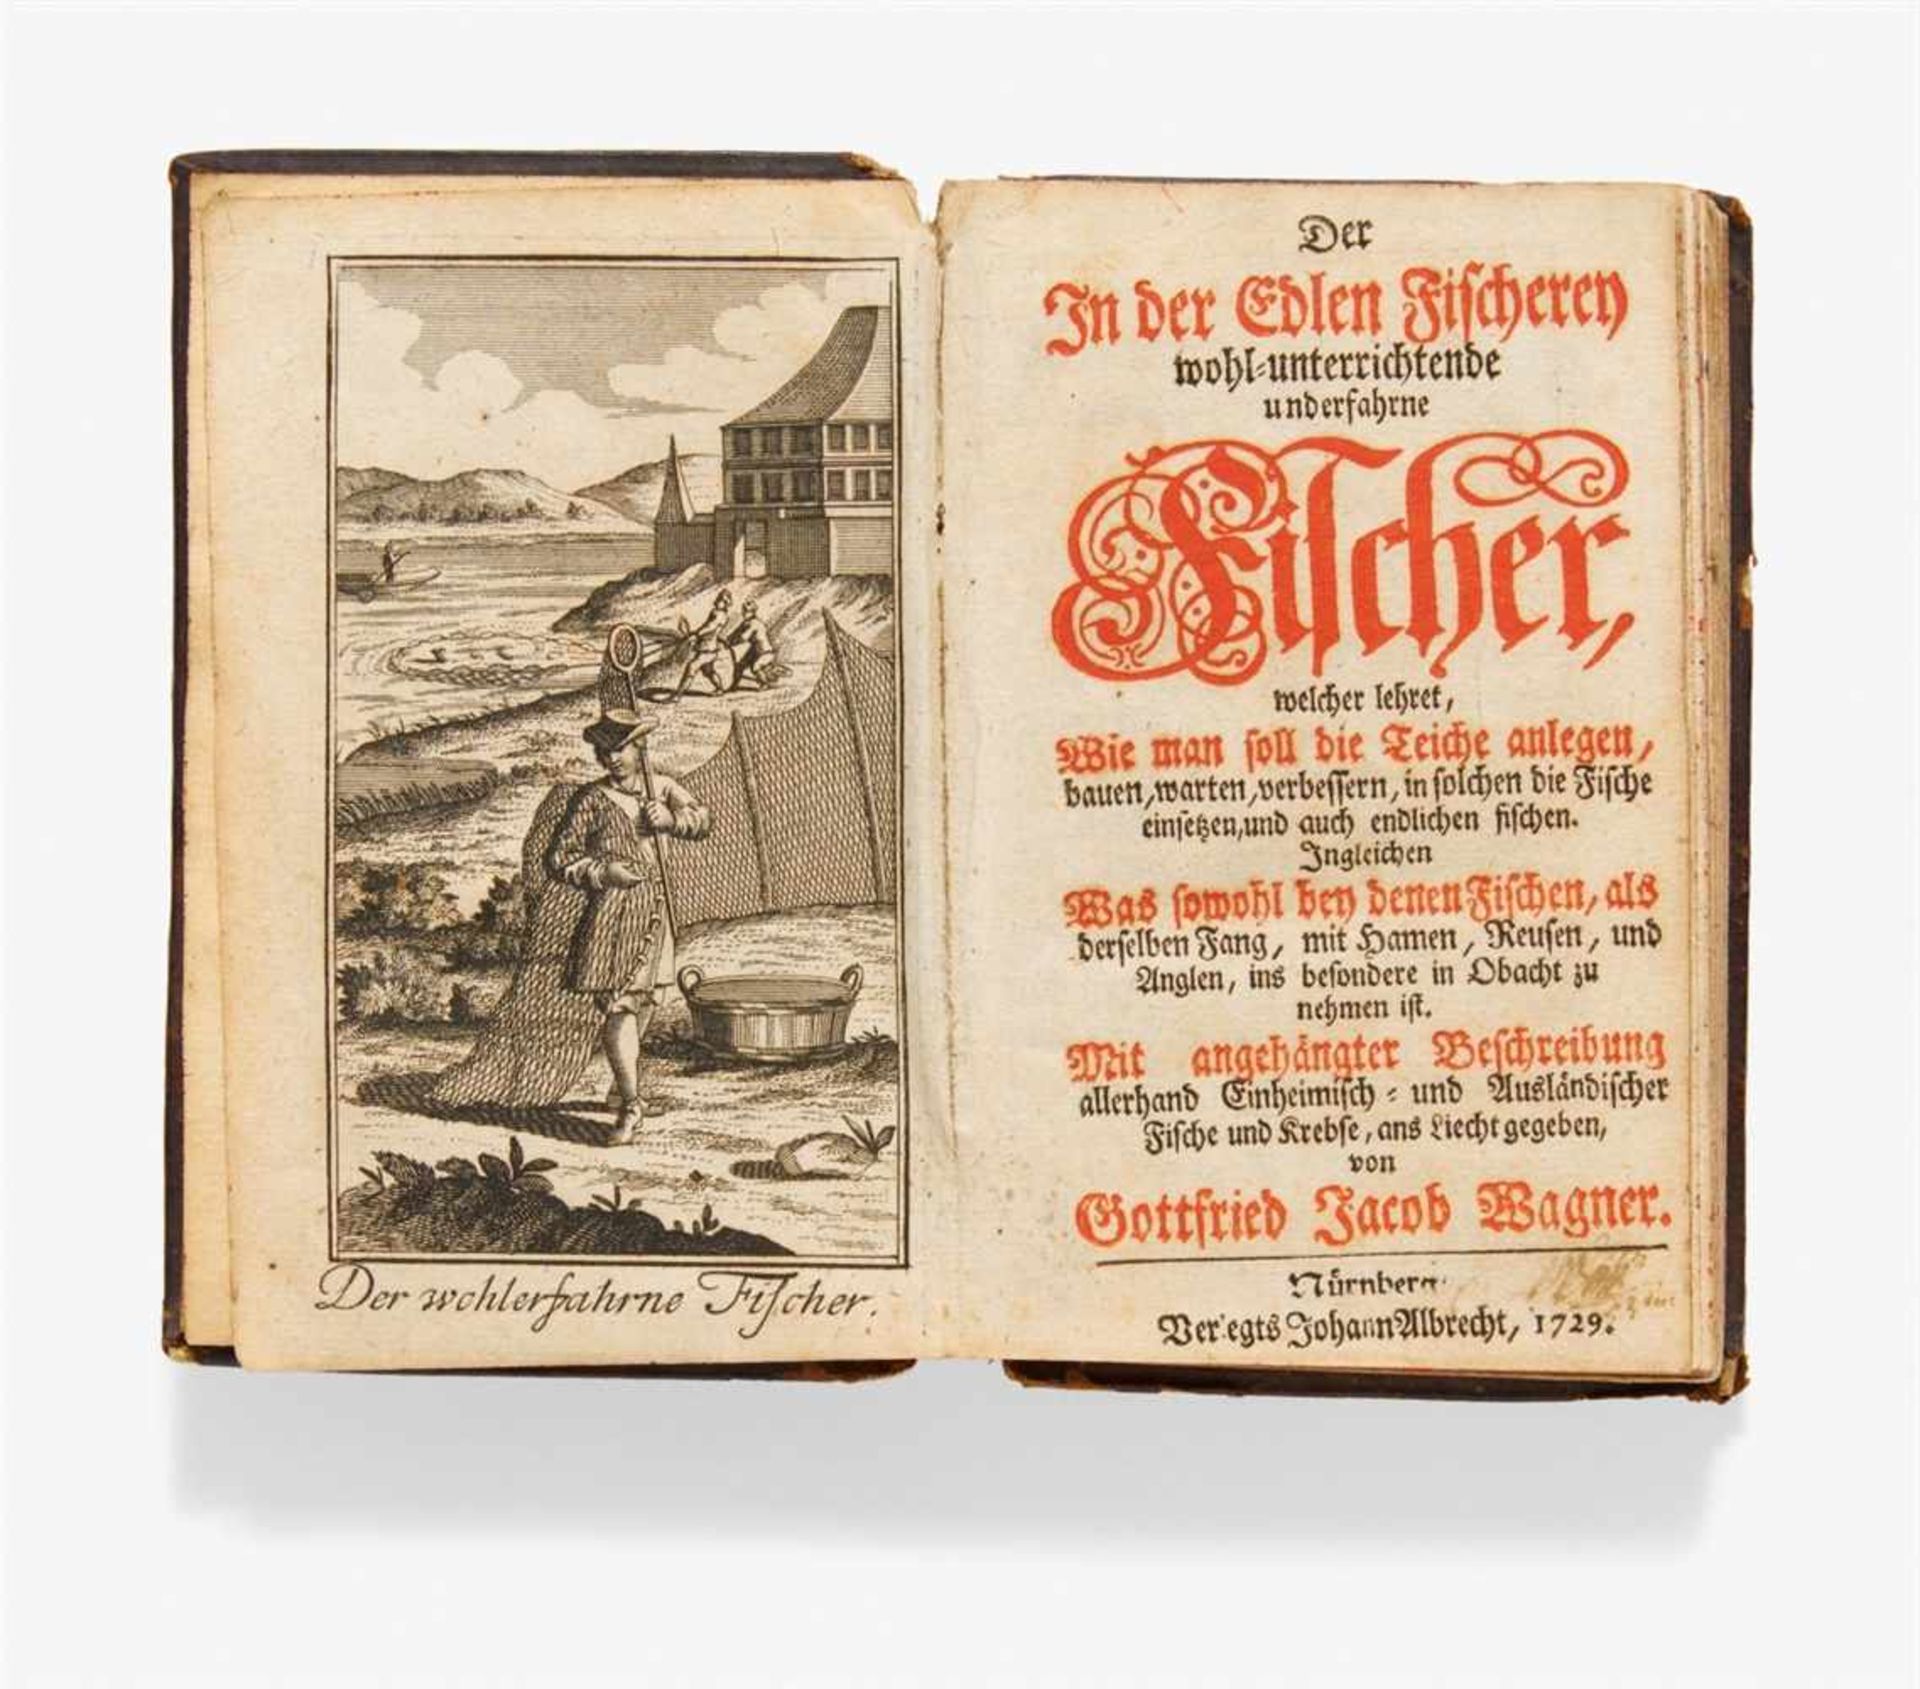 Wagner, Gottfried Jacob: Der in der edlen Fischerey wohl-unterrichtende und erfahrne Fischer,